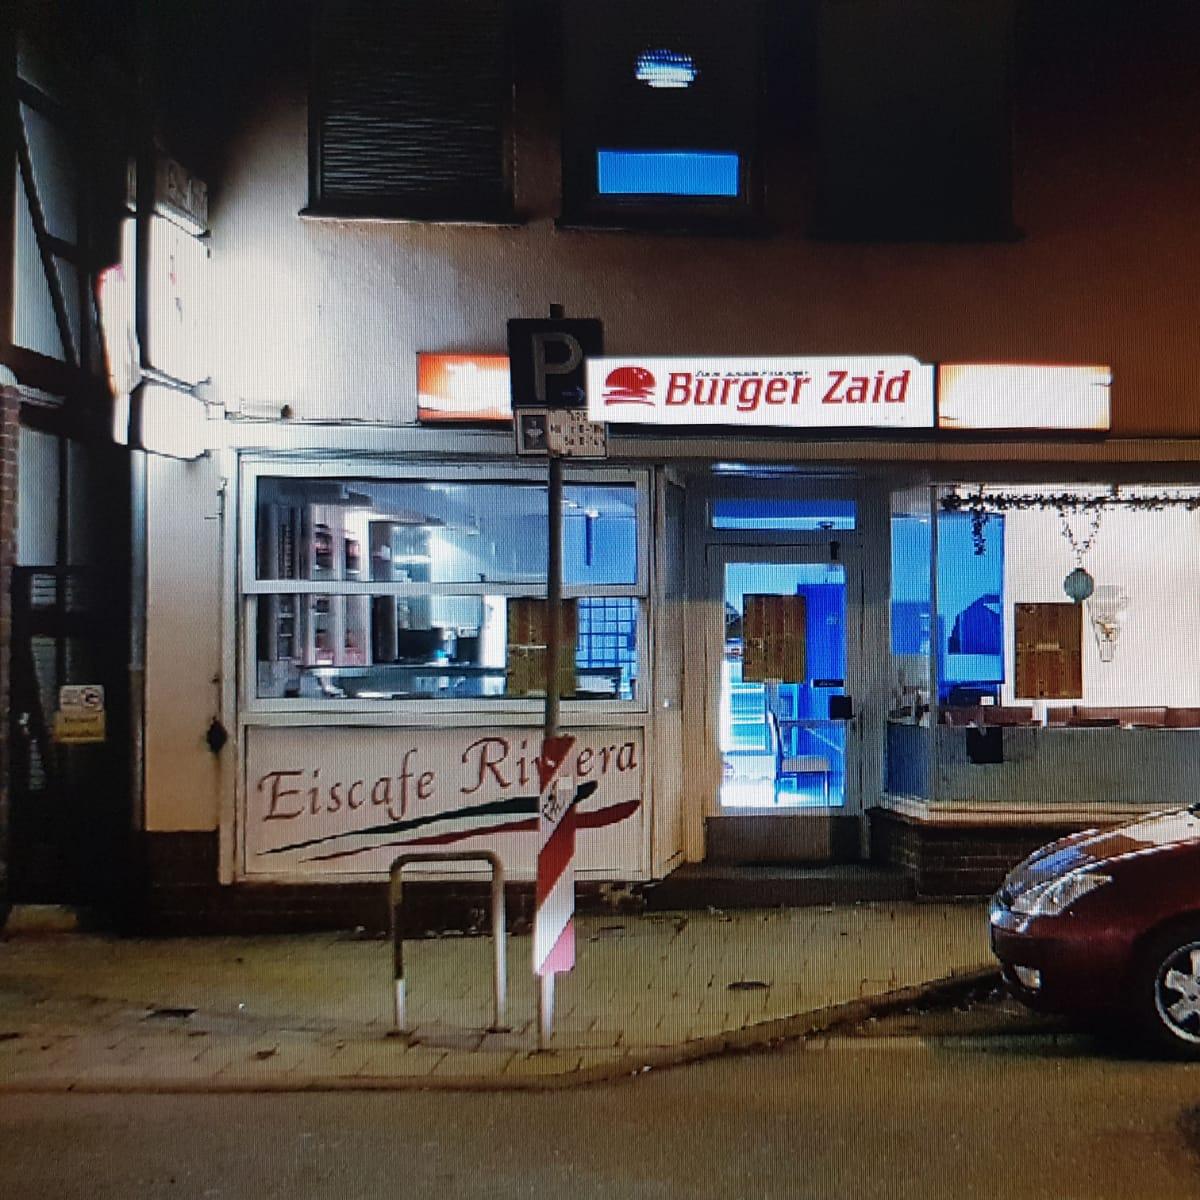 Restaurant "Burger Zaid" in Kassel